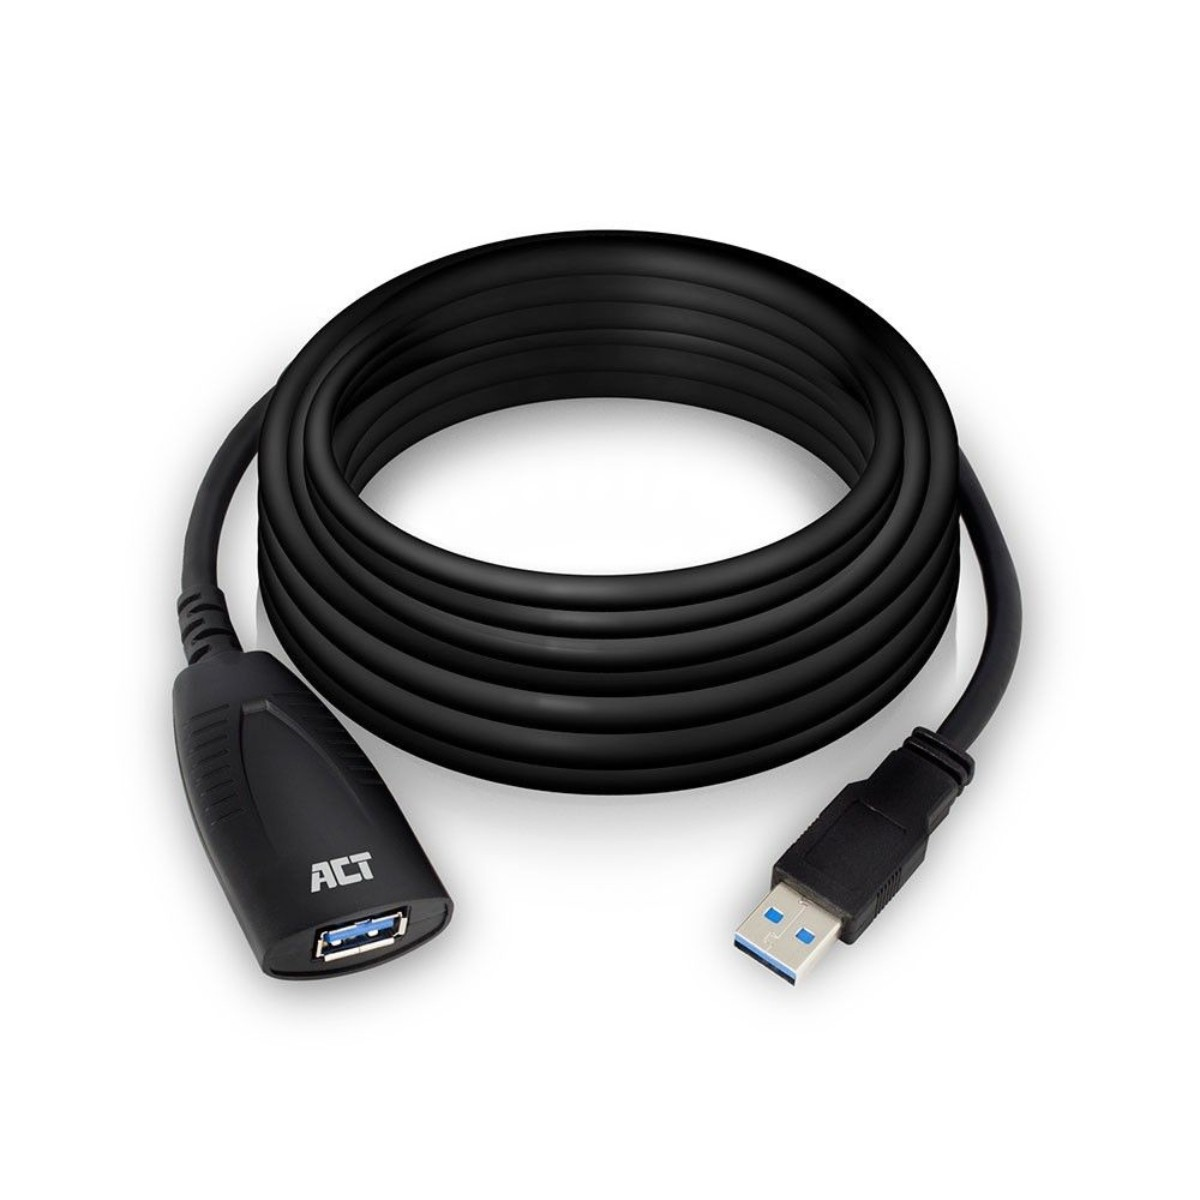 Kabel ACT AC6105 USB